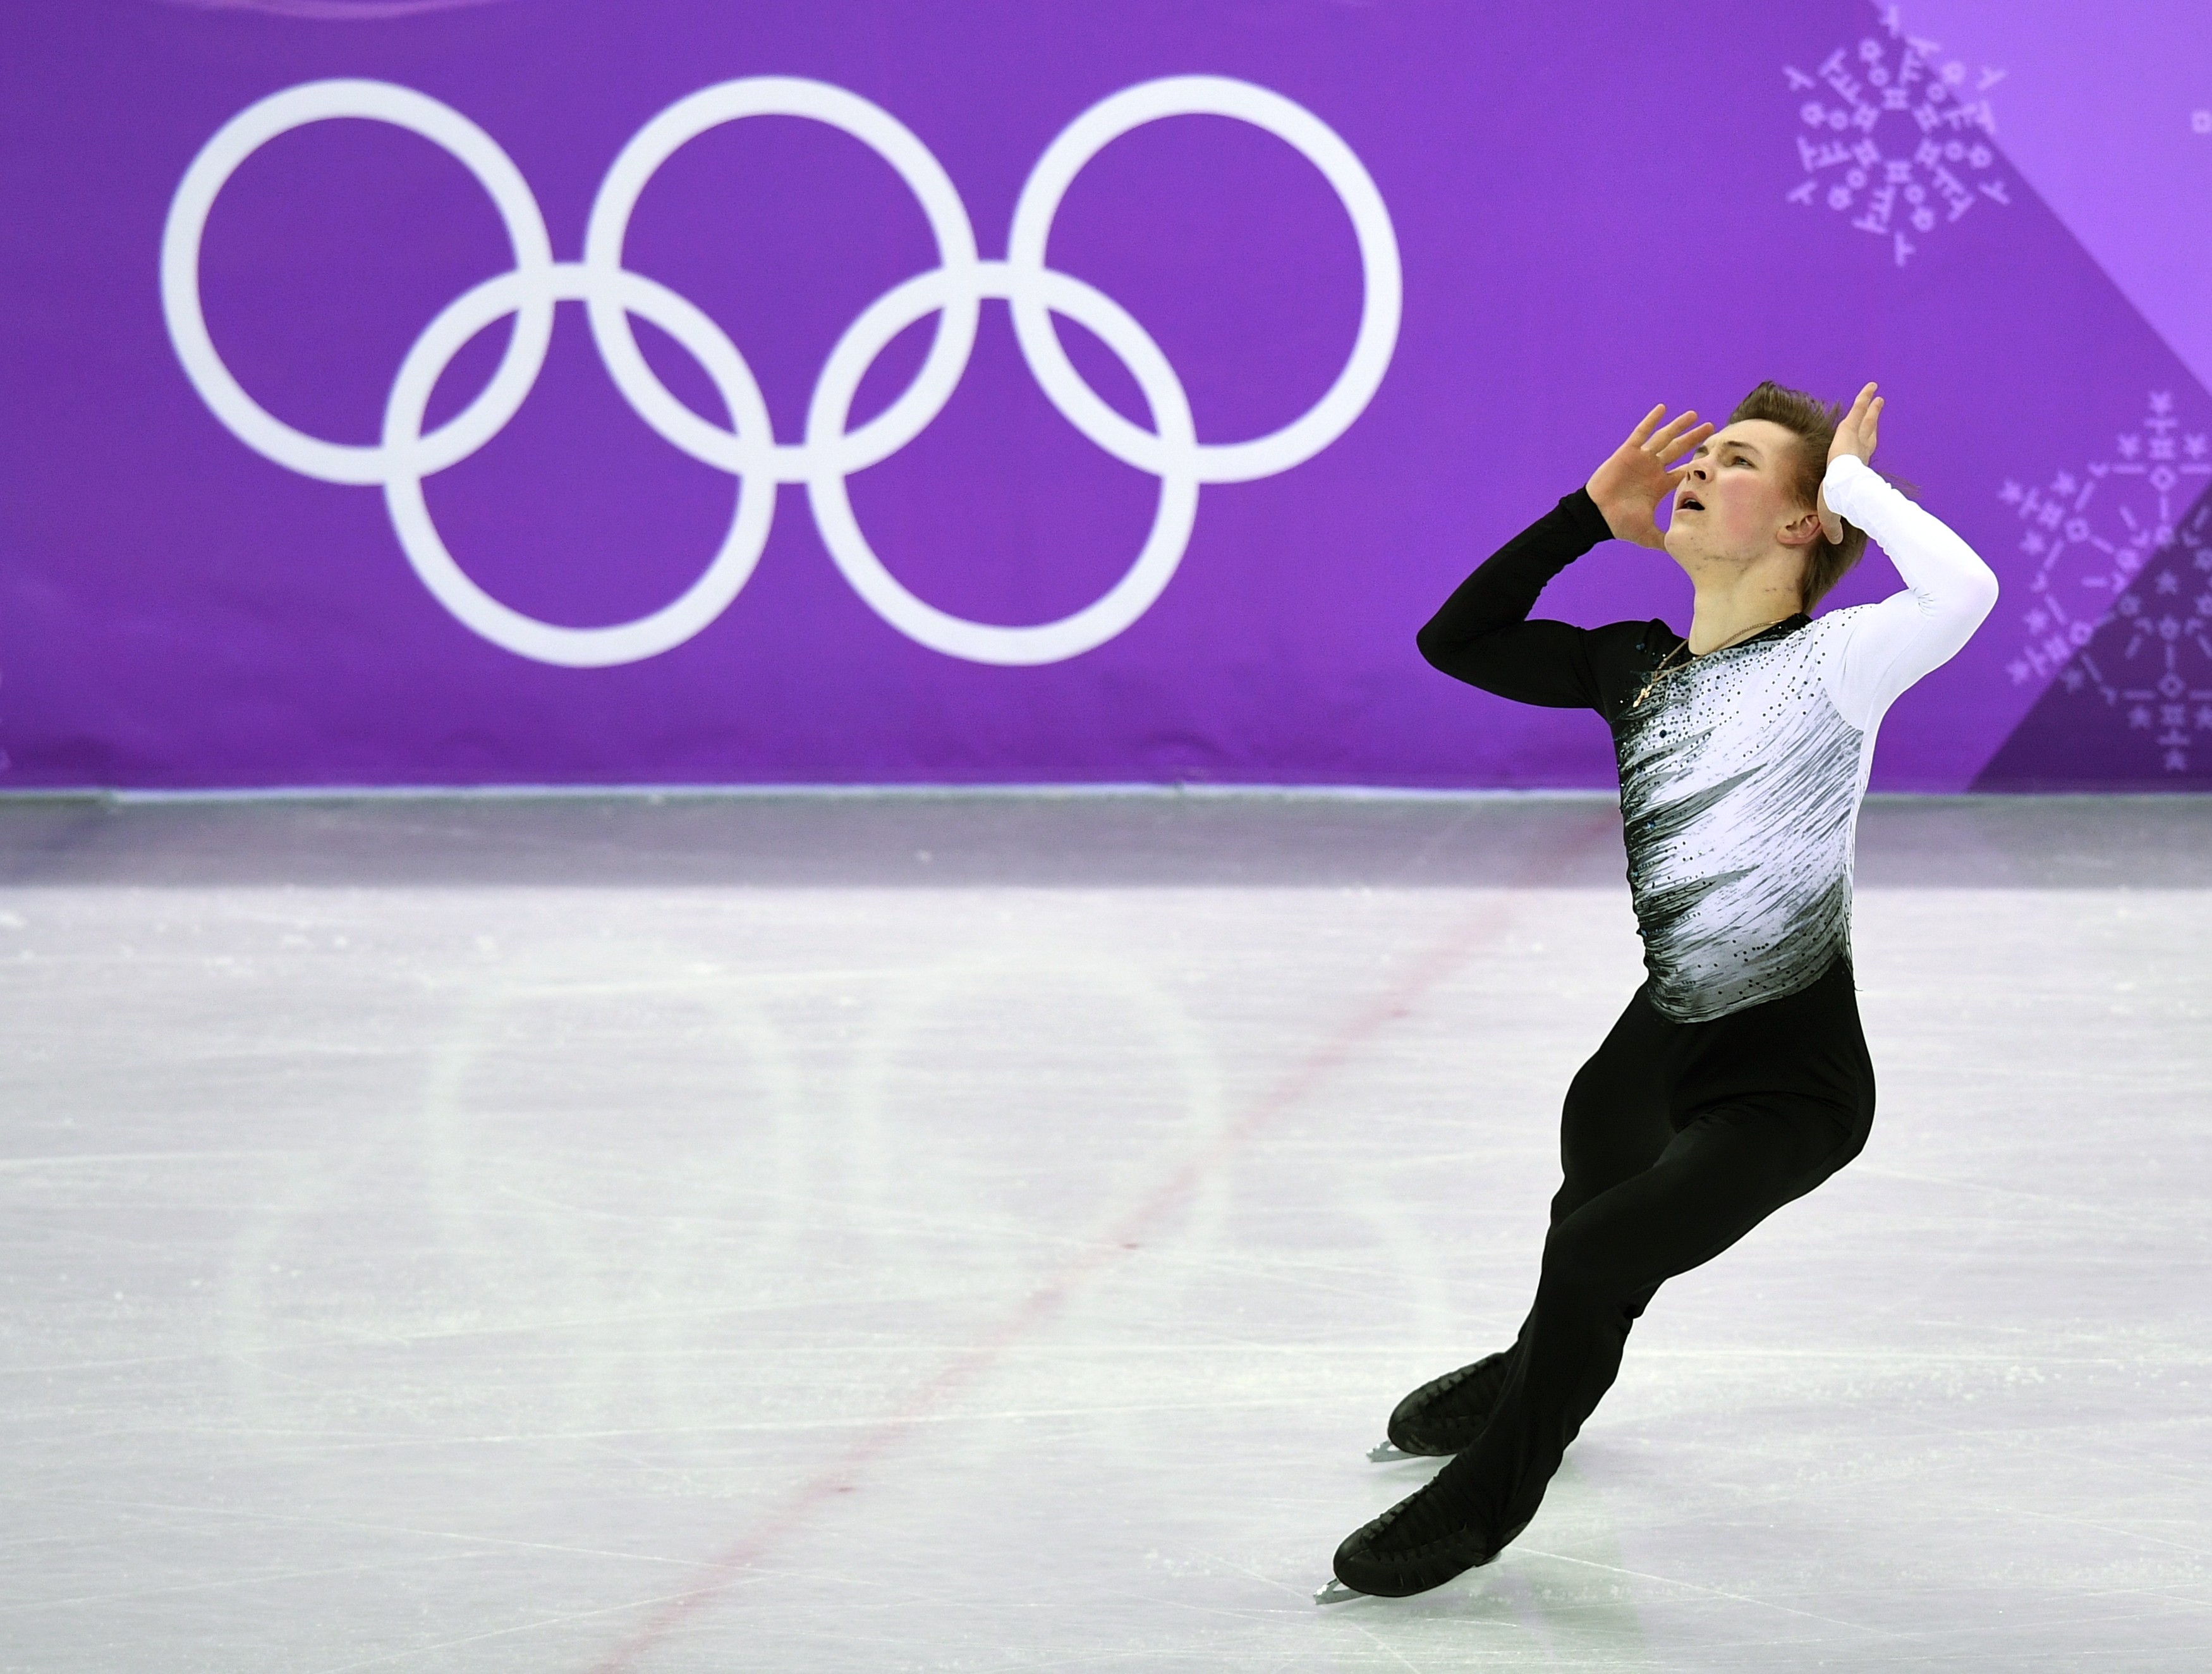 Михаил Коляда идёт восьмым после короткой программы на Олимпийских играх. Фото: © РИА Новости/Александр Вильф